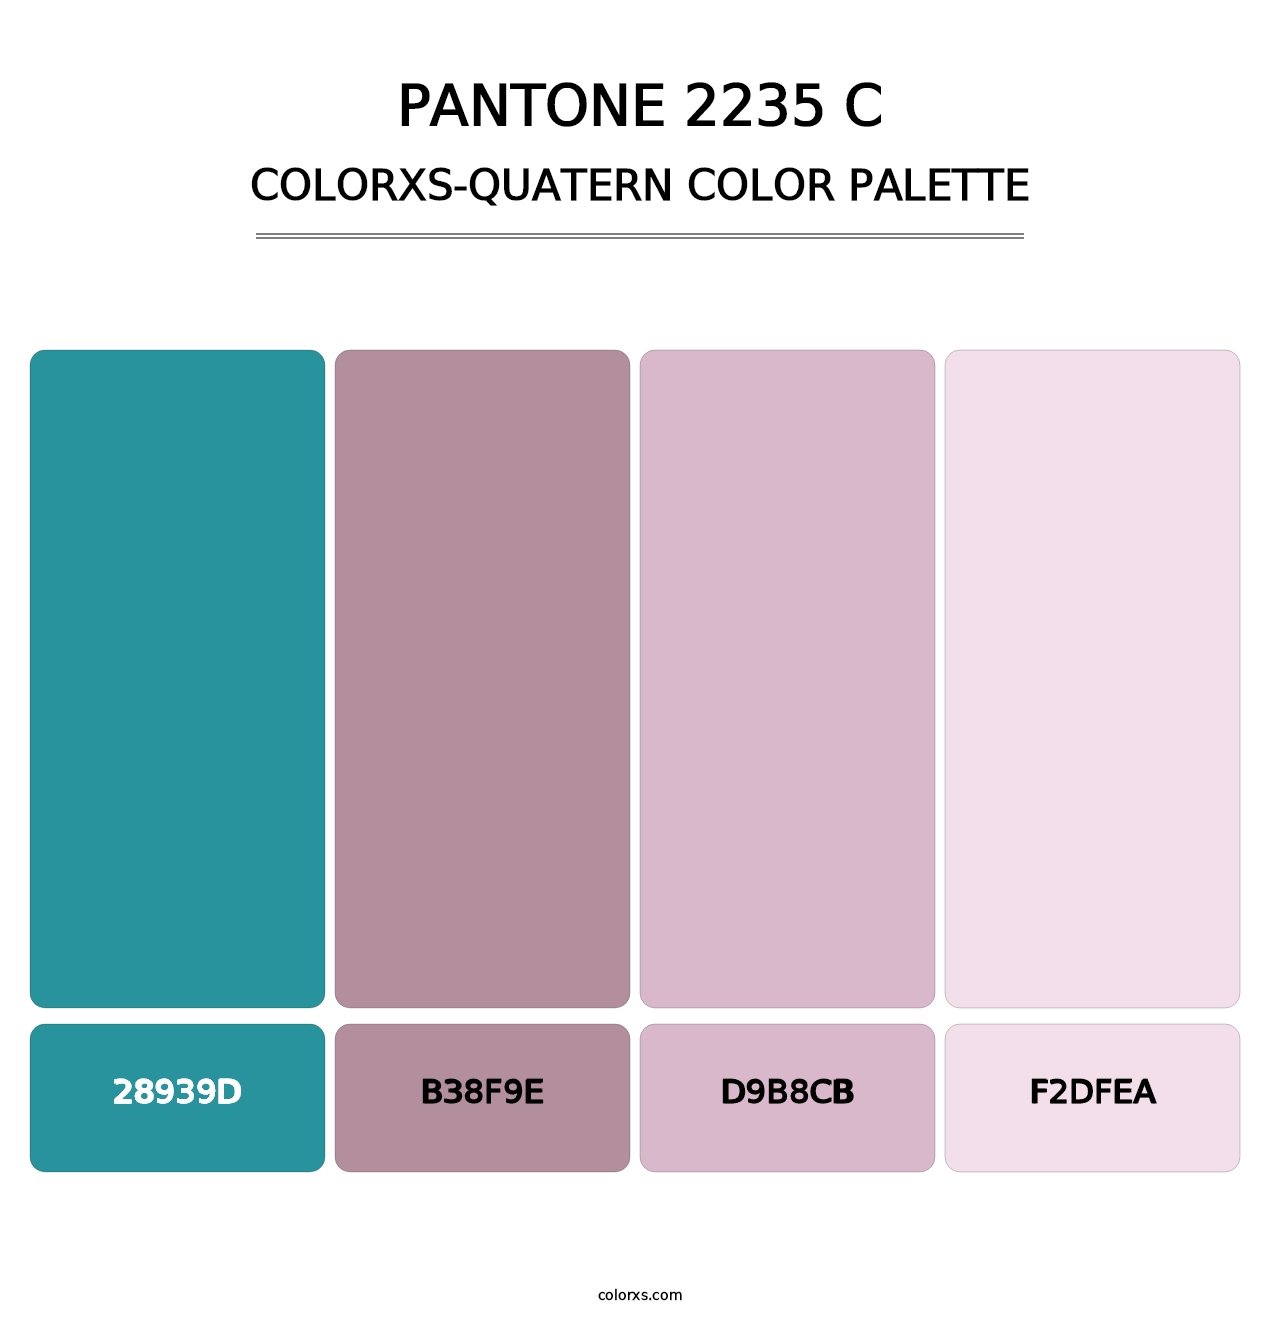 PANTONE 2235 C - Colorxs Quatern Palette